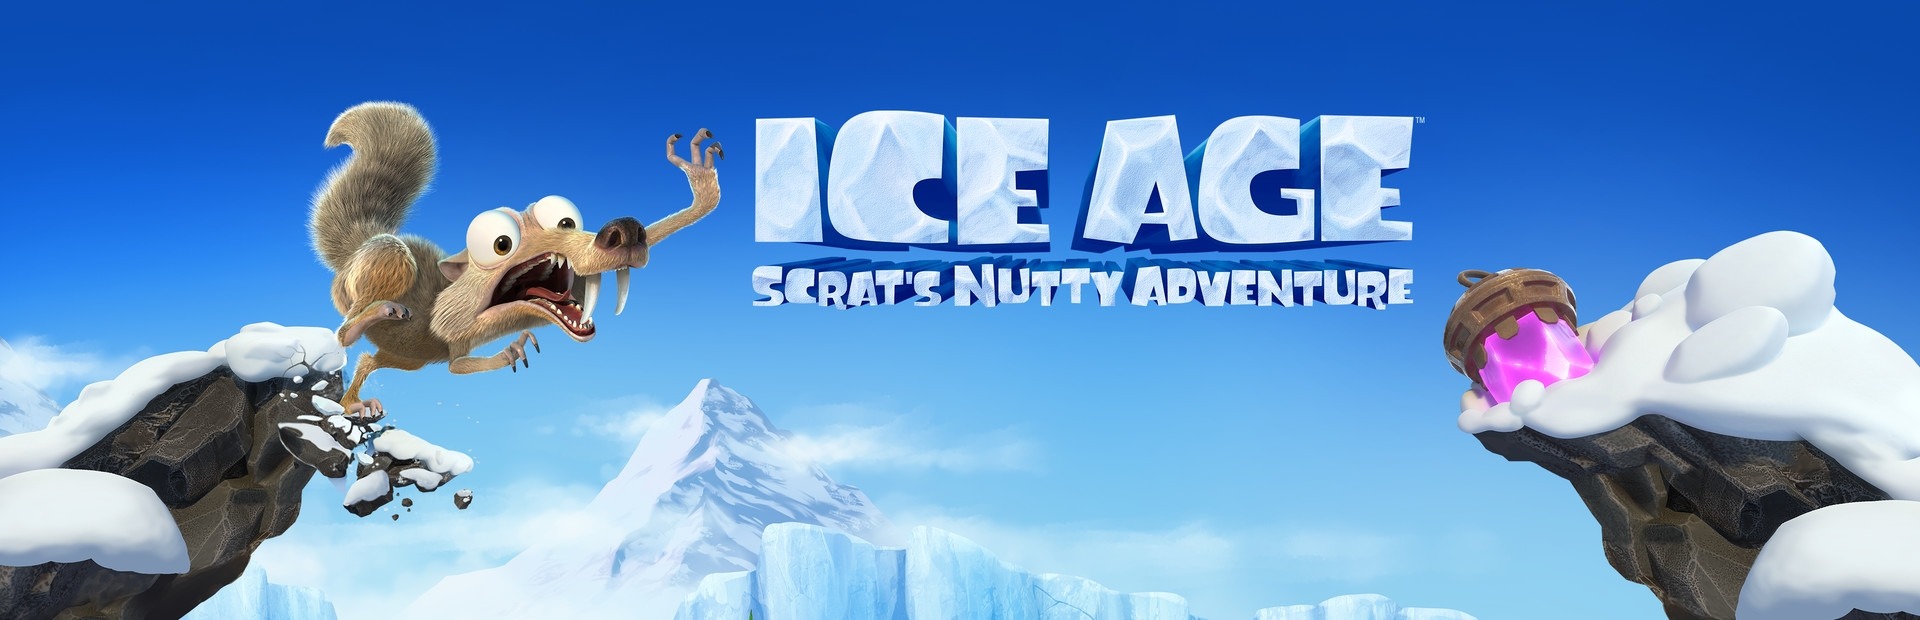 L’Era Glaciale: La strampalata avventura di Scrat Switch